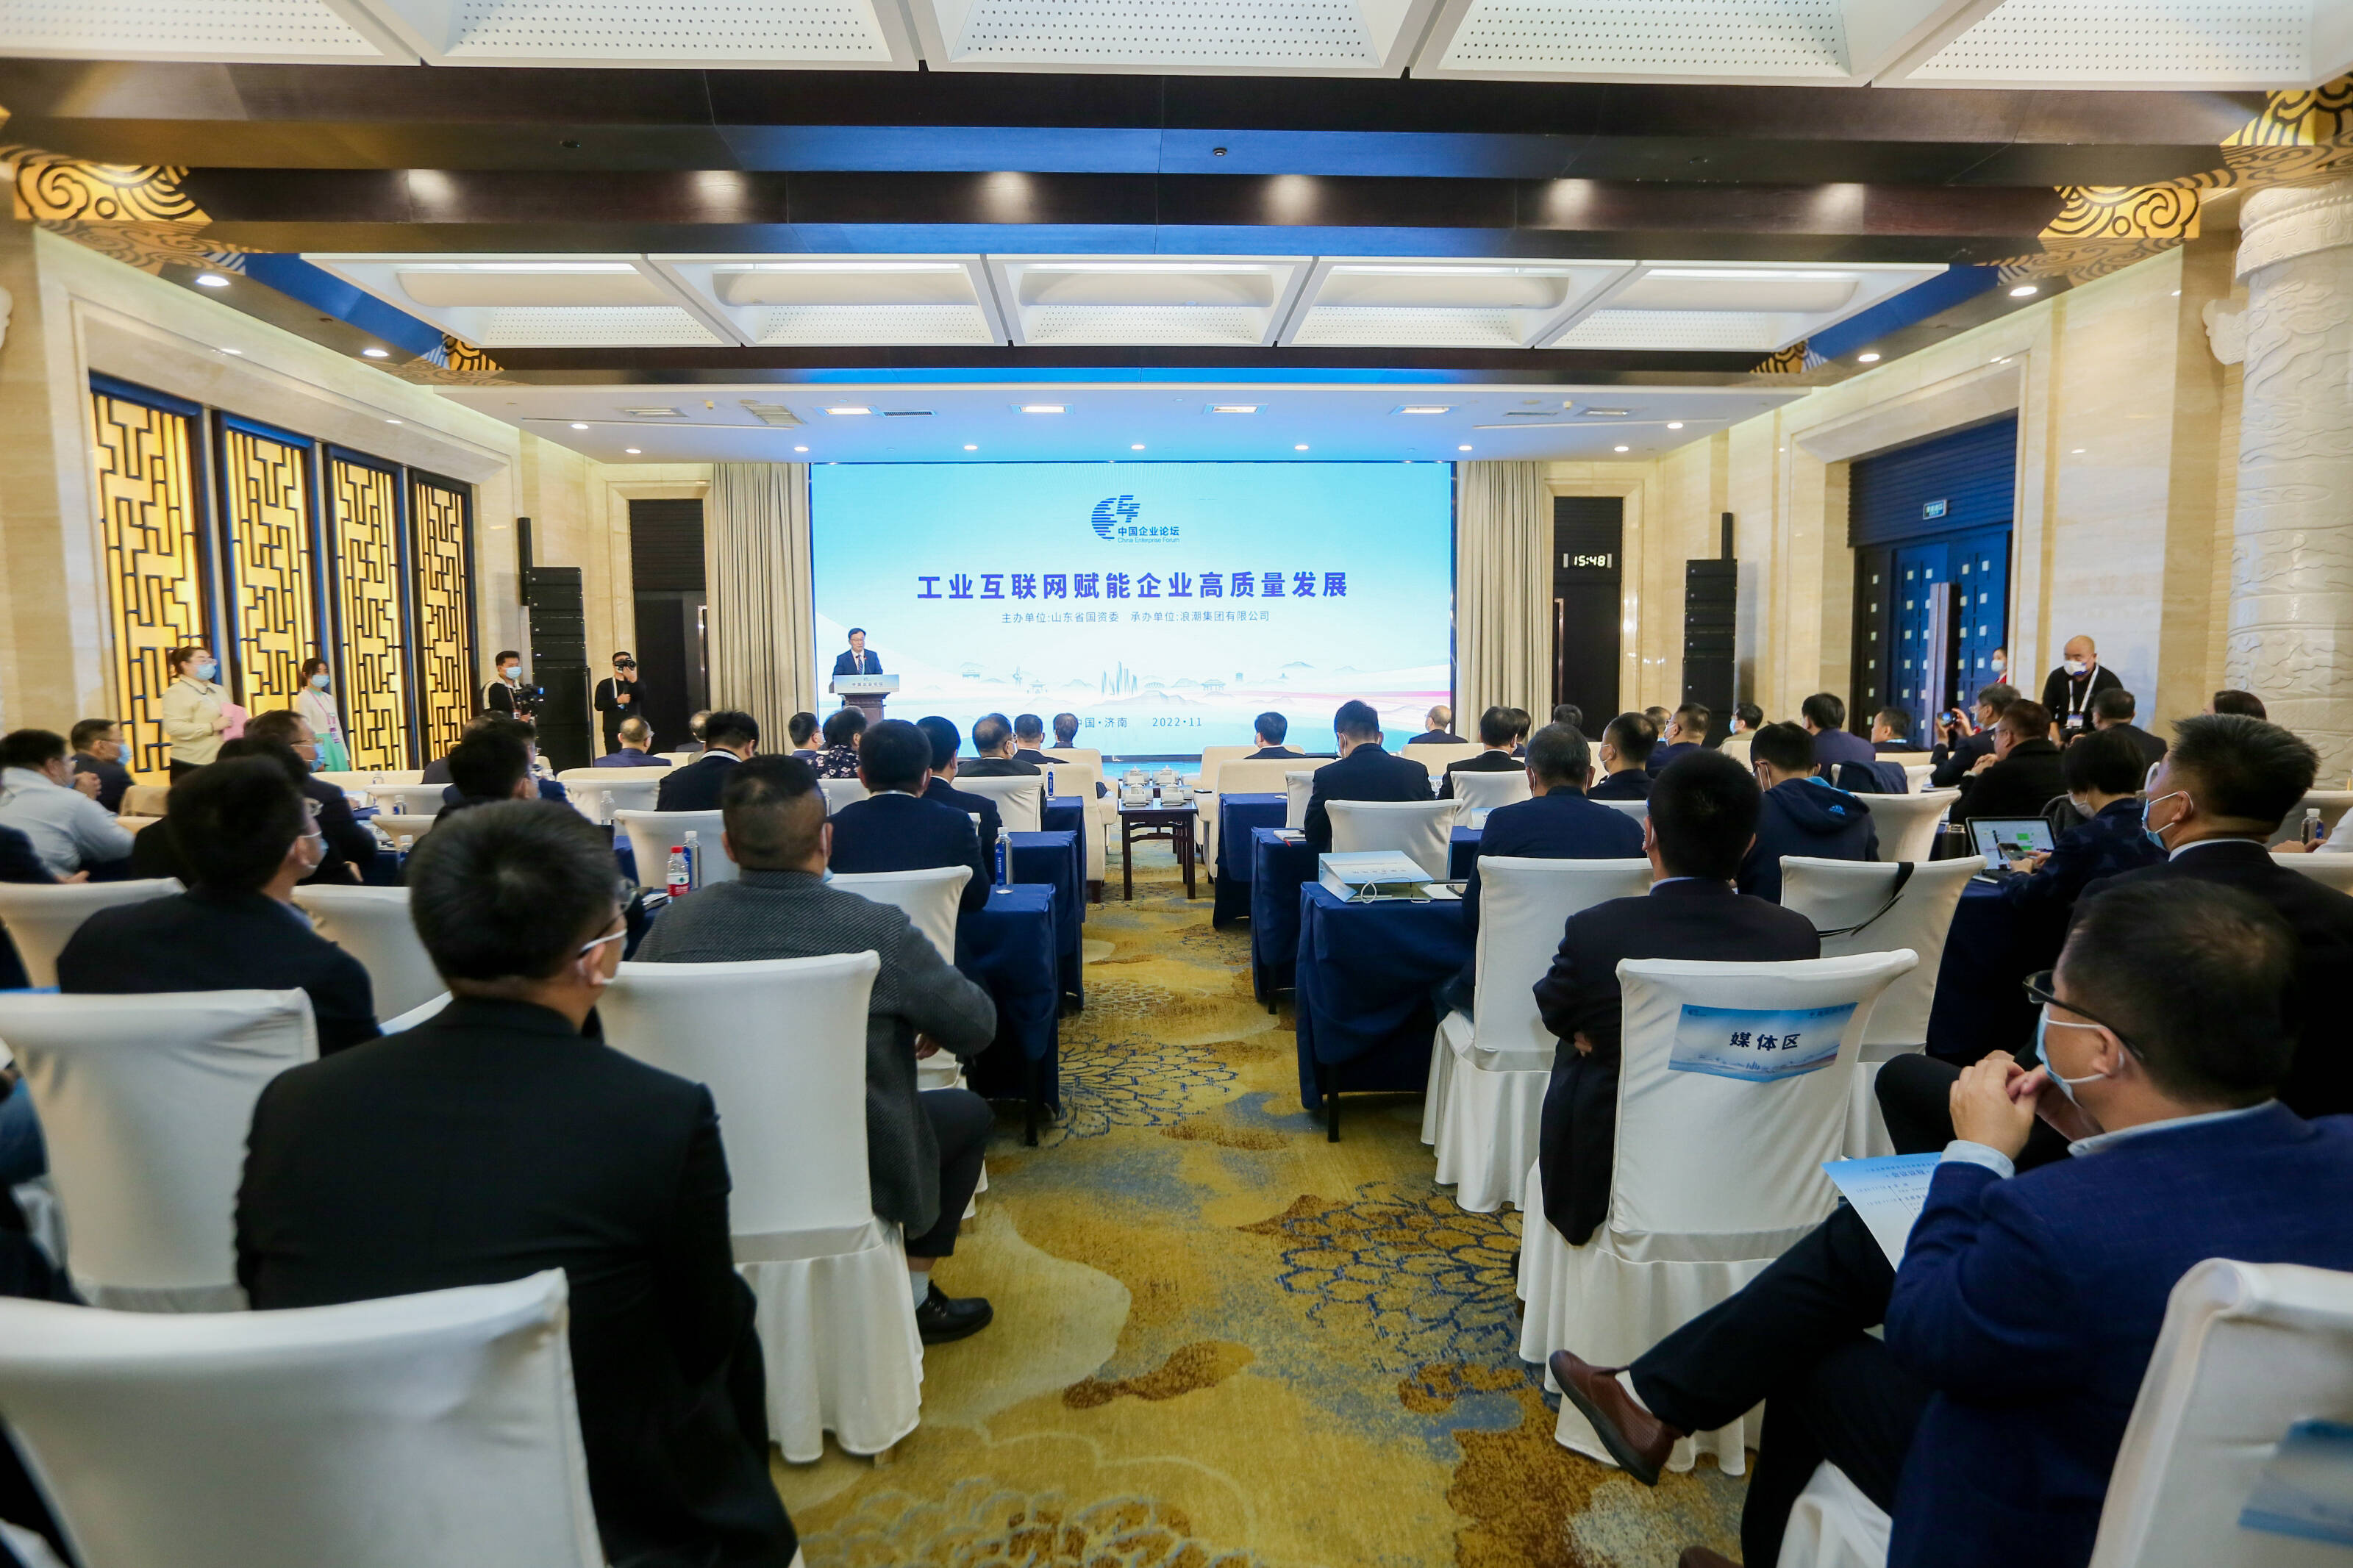 聚焦工业互联网赋能高质量发展 中国企业论坛平行论坛在济南举办